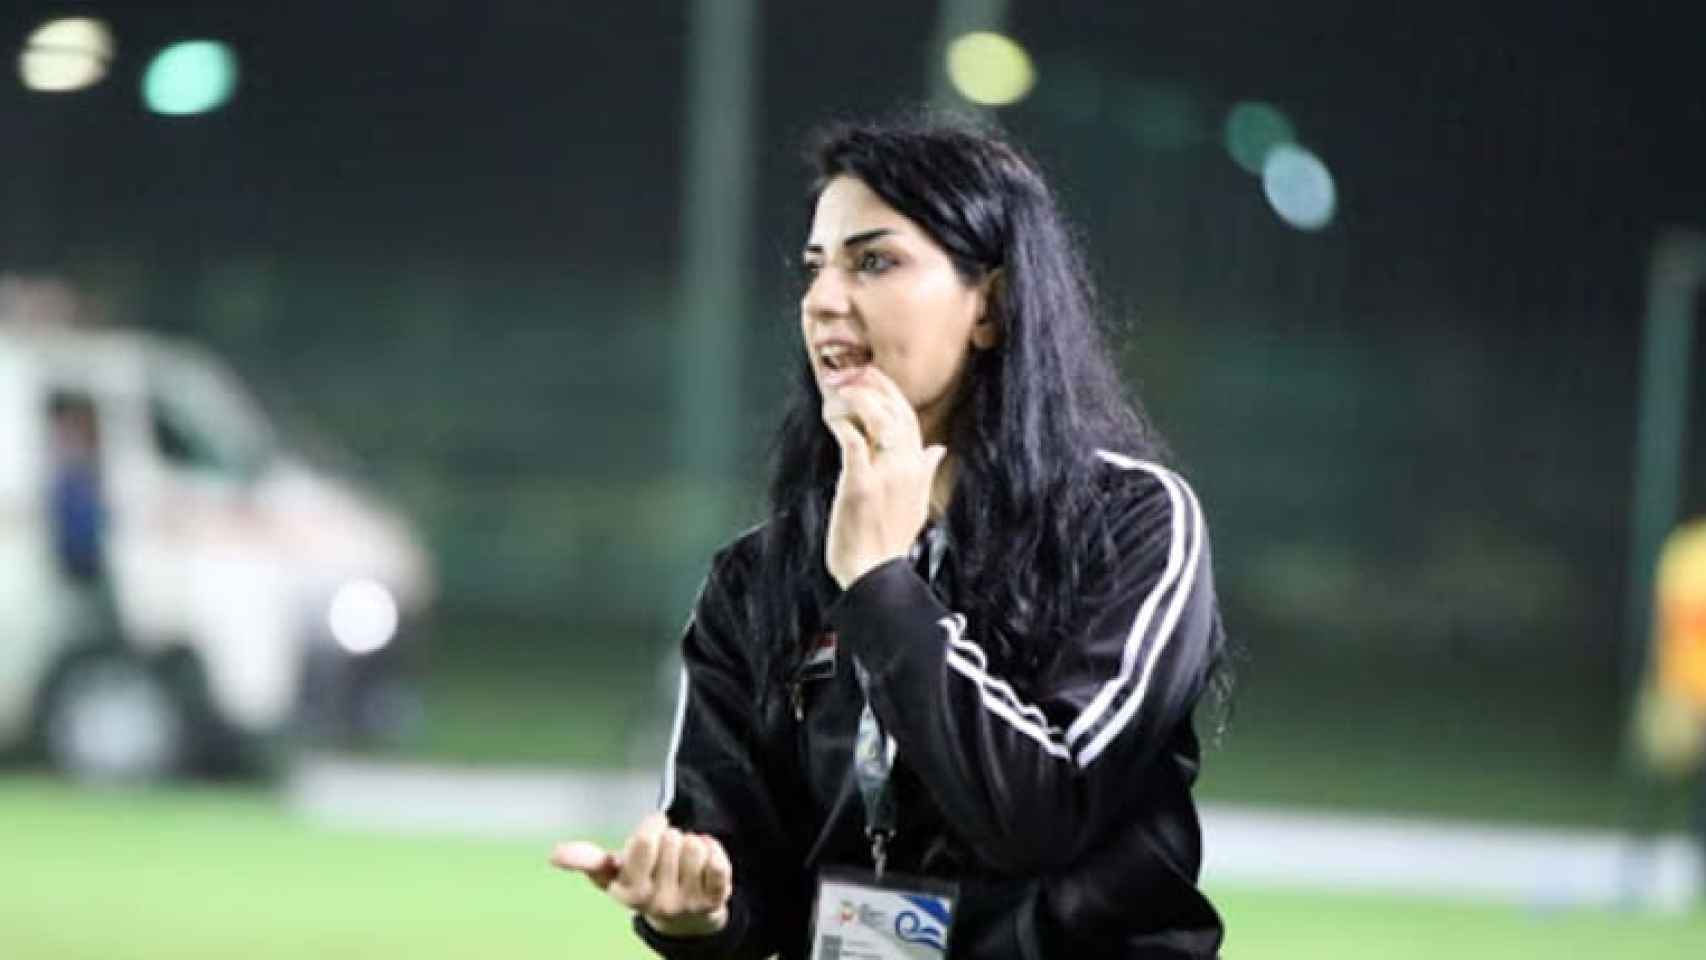 Maha Janoud, exfutbolista siria y entrenadora